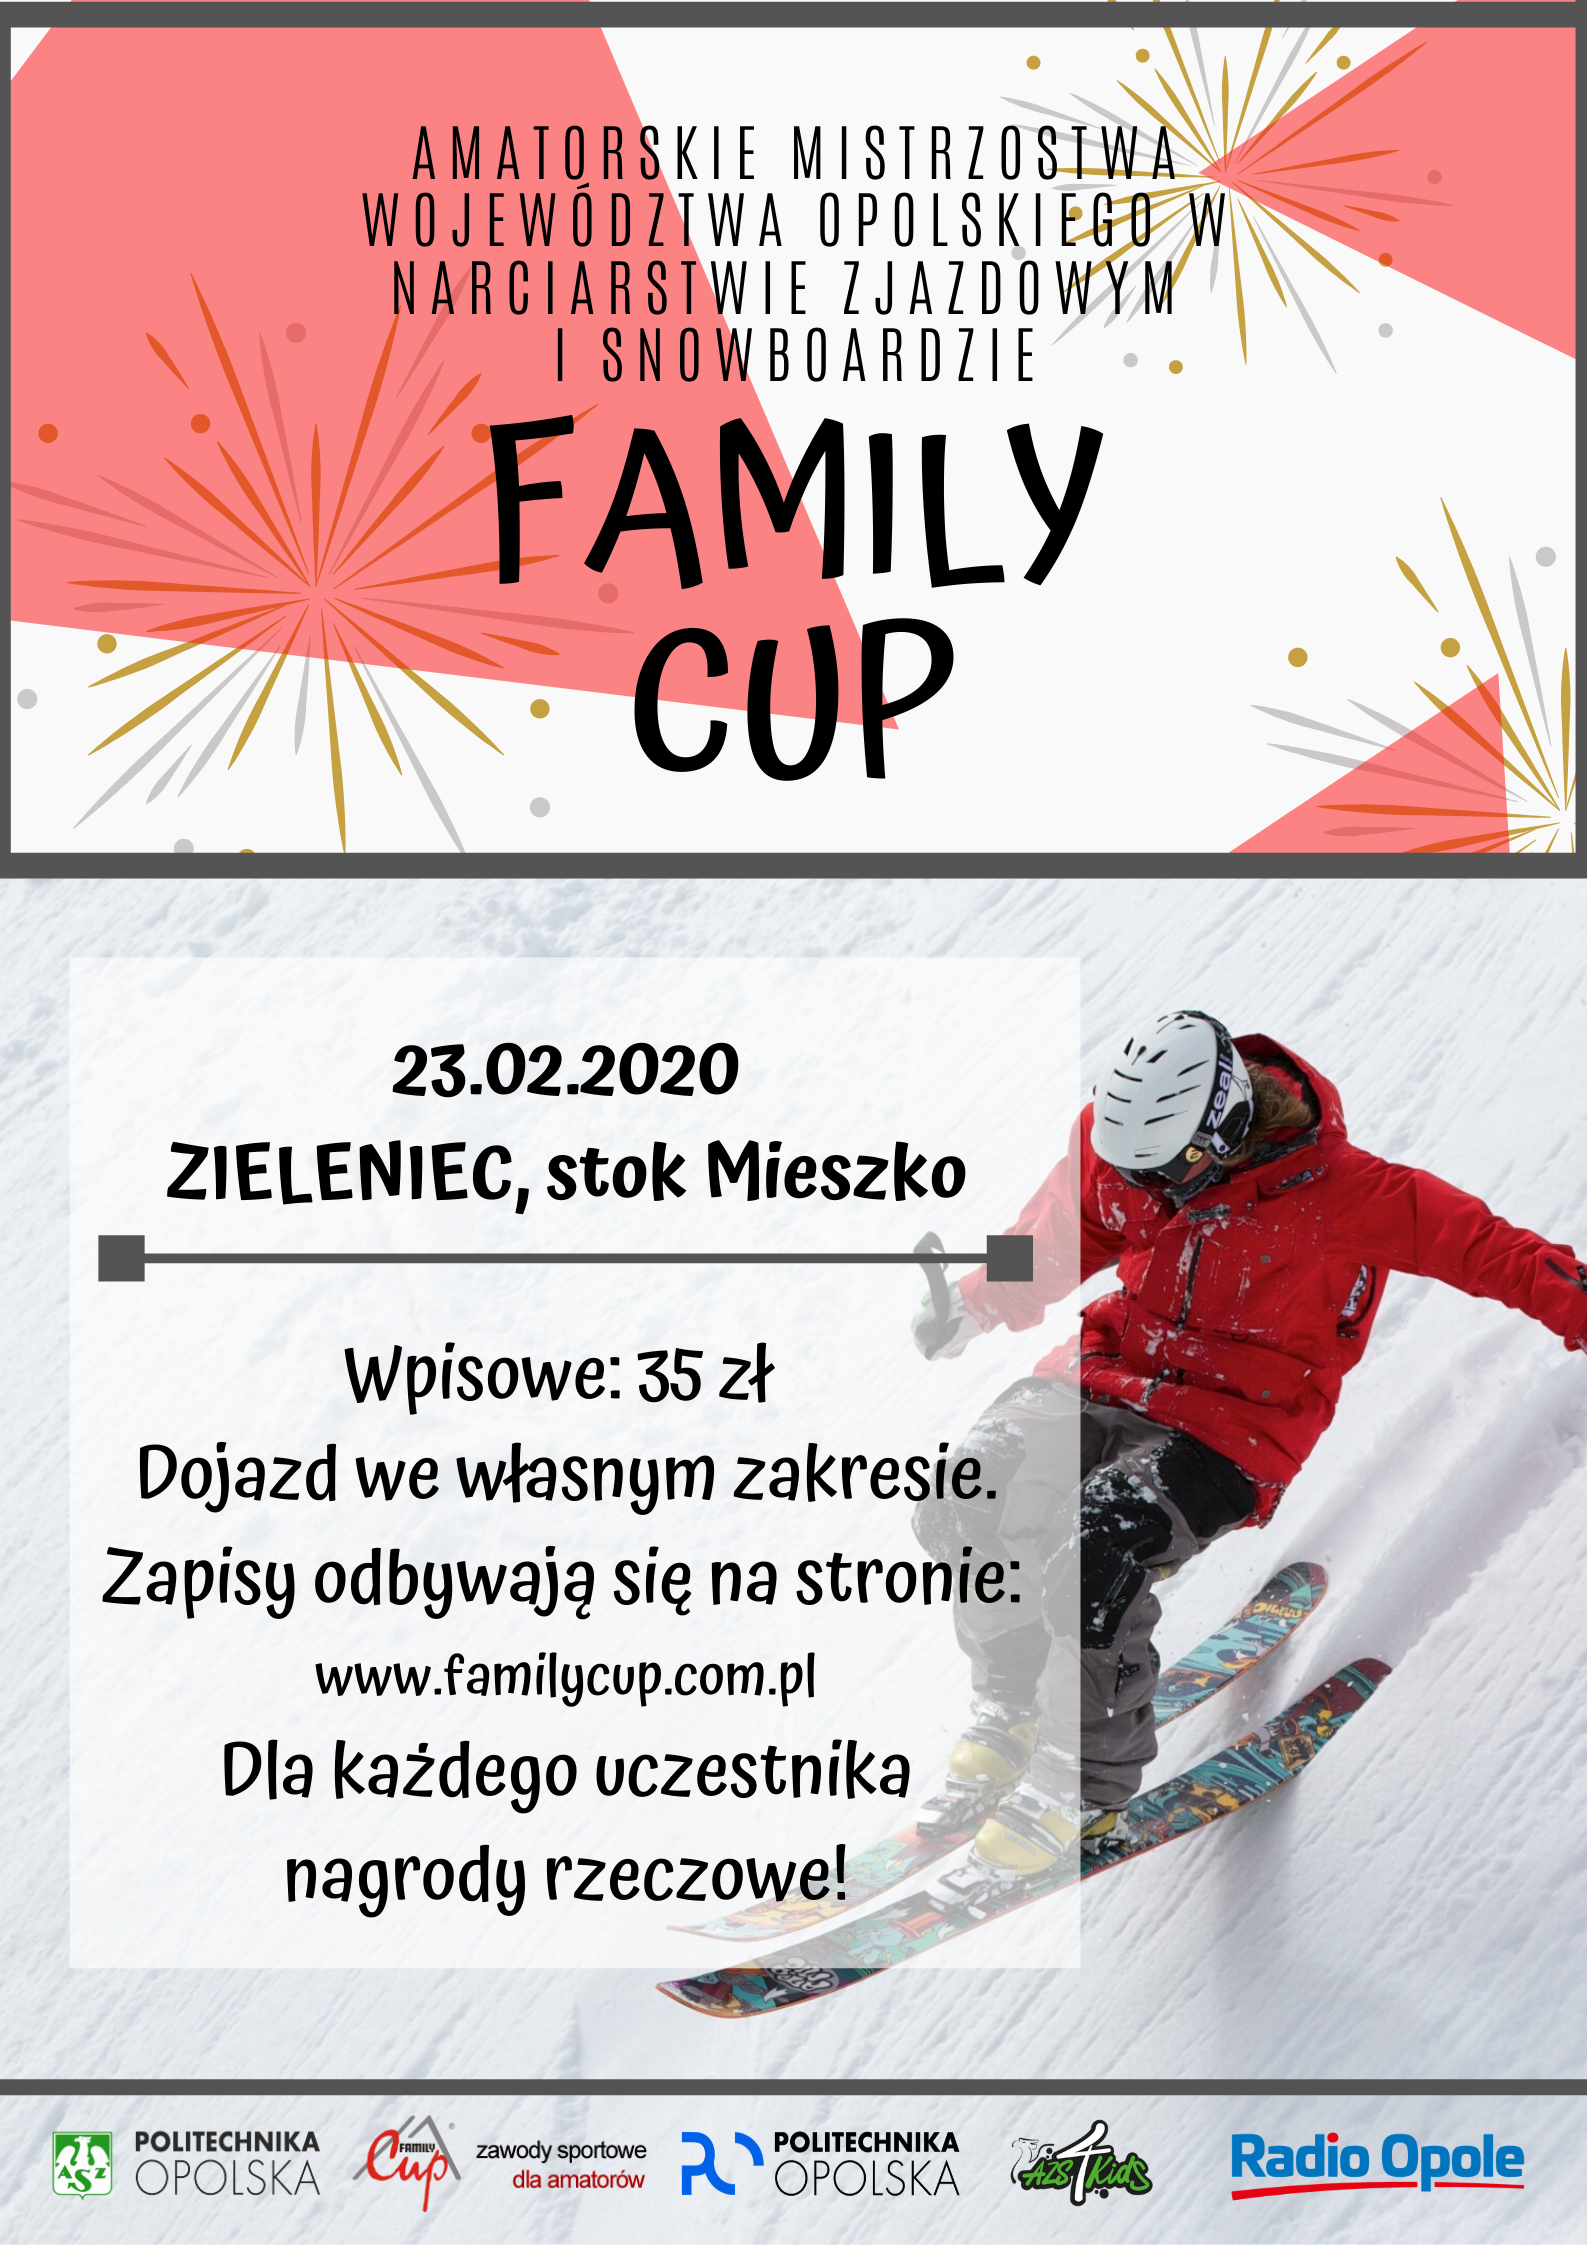 Family Cup – rodzinna impreza sportowa już wkrótce